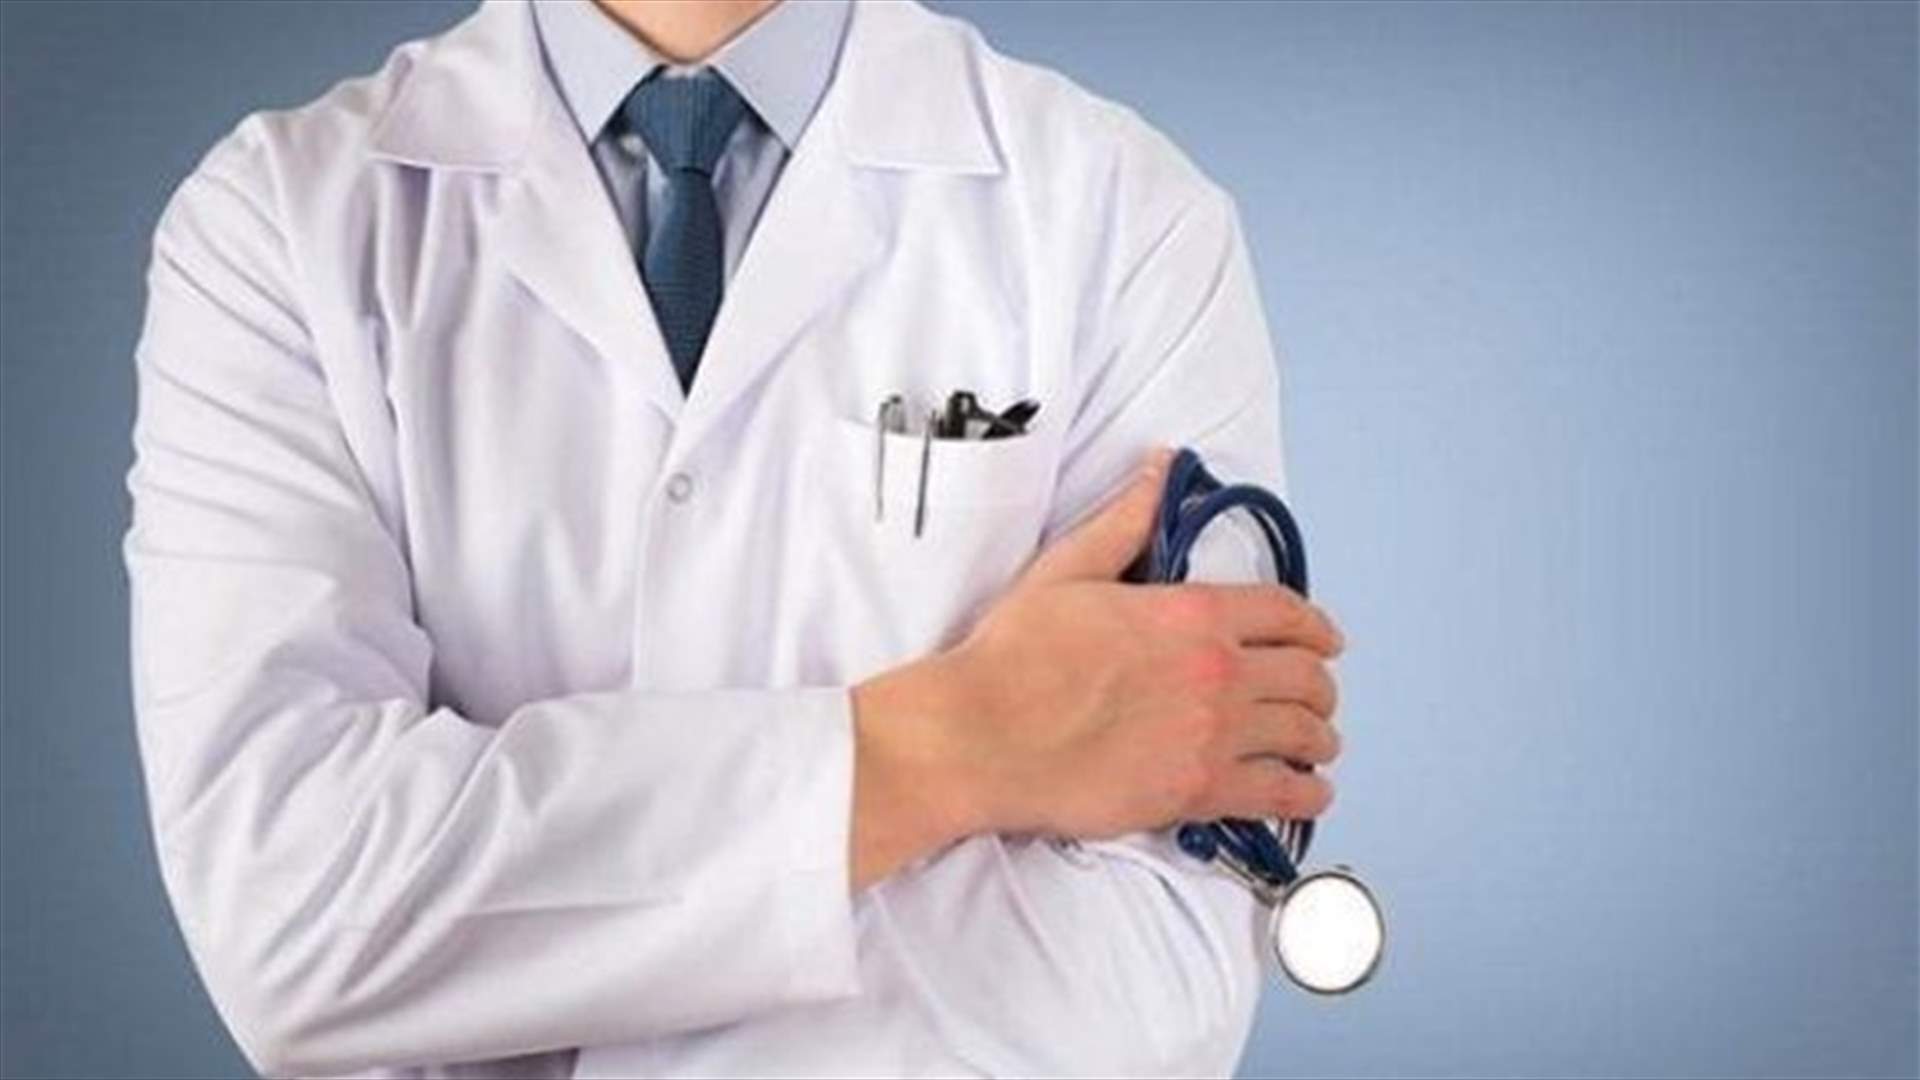 تجمع الاطباء: لزيادة رواتب أطباء المستشفيات الحكومية وبدل المعاينات...